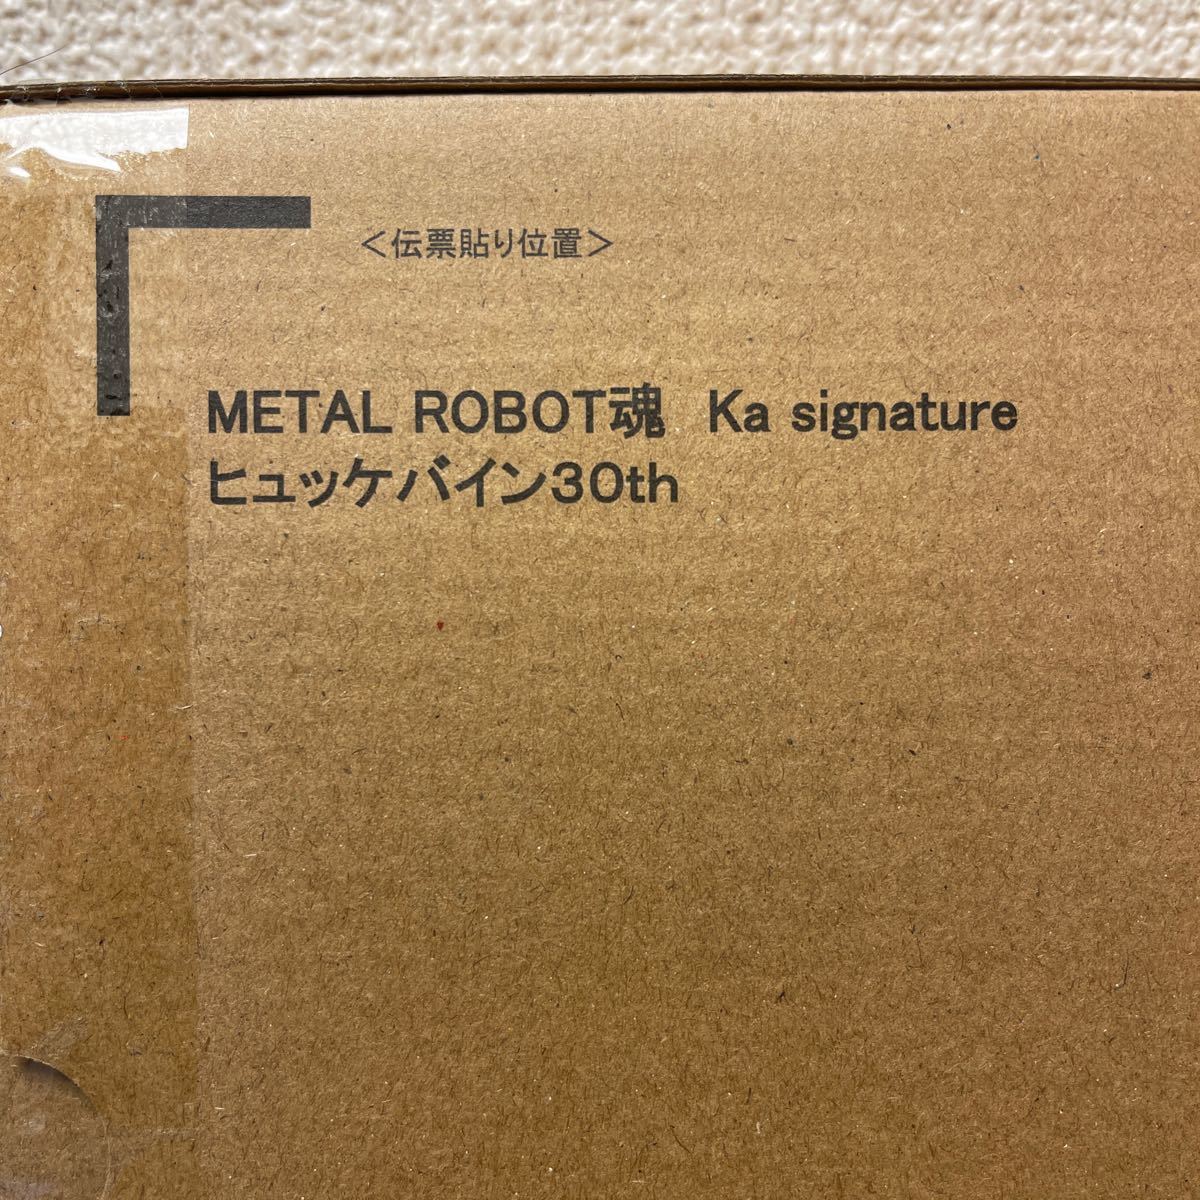 METAL ROBOT 魂 Ka signature ヒュッケバイン30th プレミアムバンダイ限定 新品購入 未開封_画像3